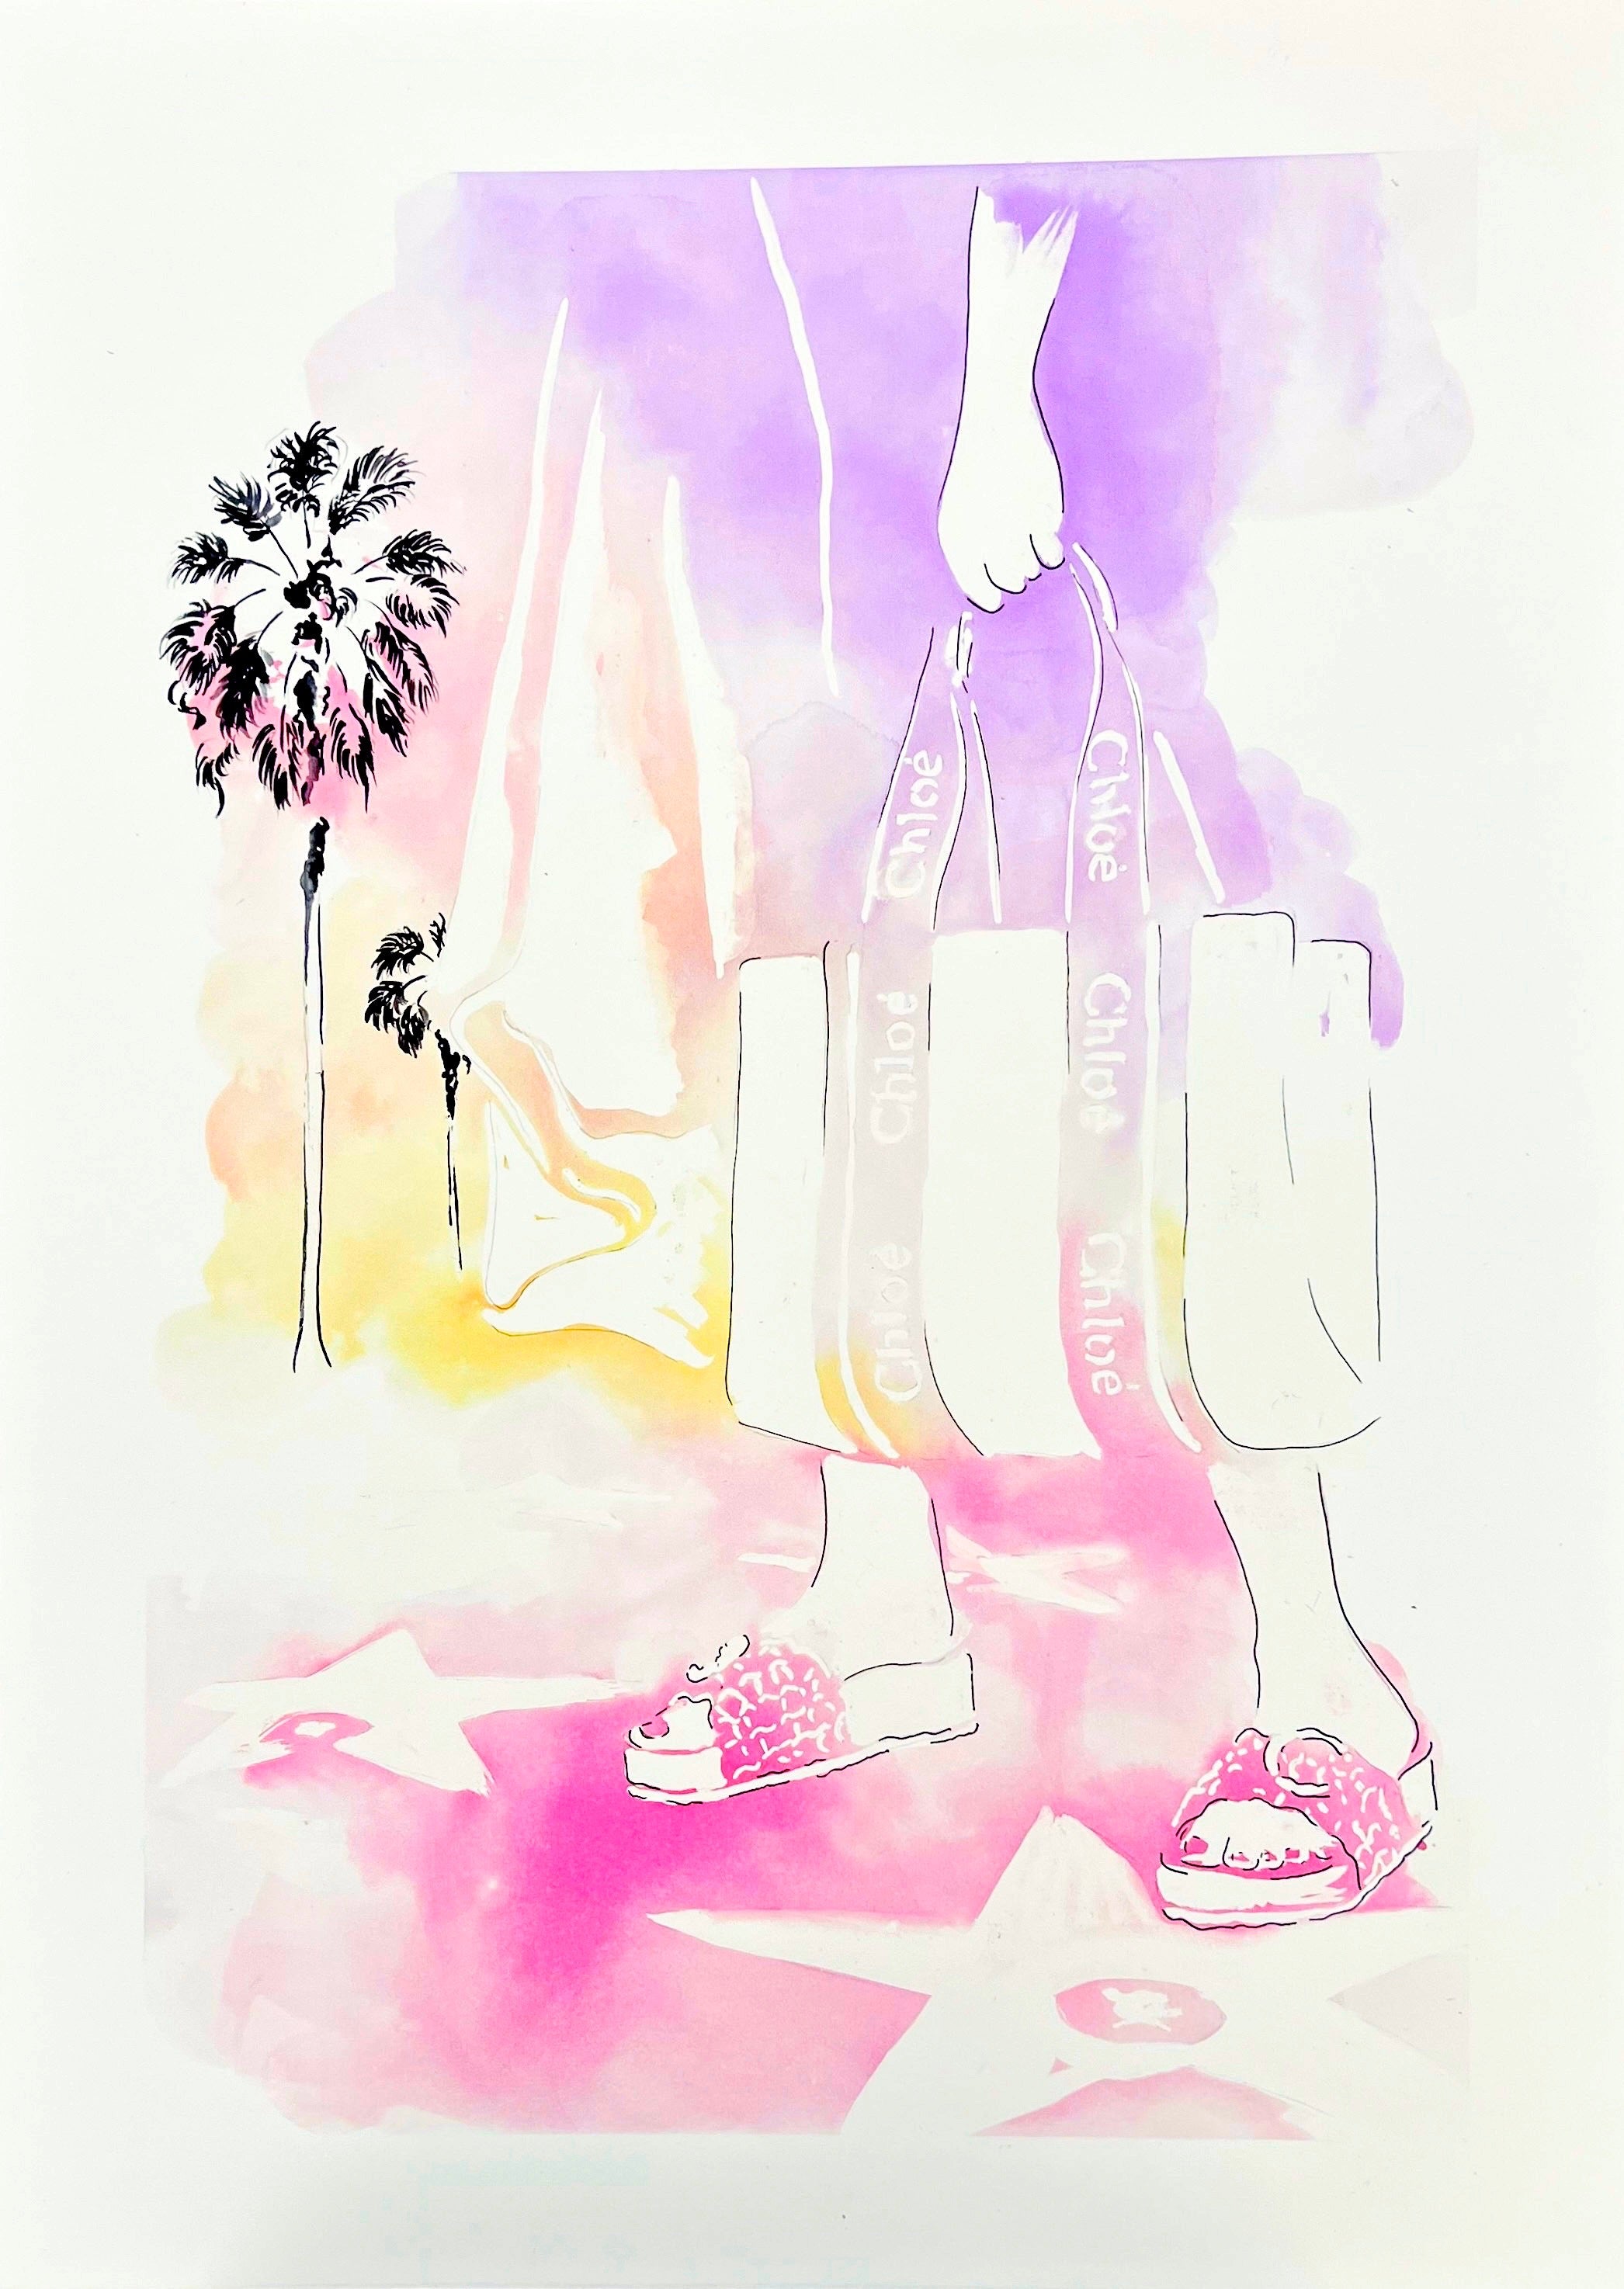 Retrouvez toutes les oeuvres de l'illustratrice Vicki Louise Ward chez Acid Gallery, galerie d'art contemporain dans le Vieux-Lille | Los Angeles collection Aquarelle 50X70 cm